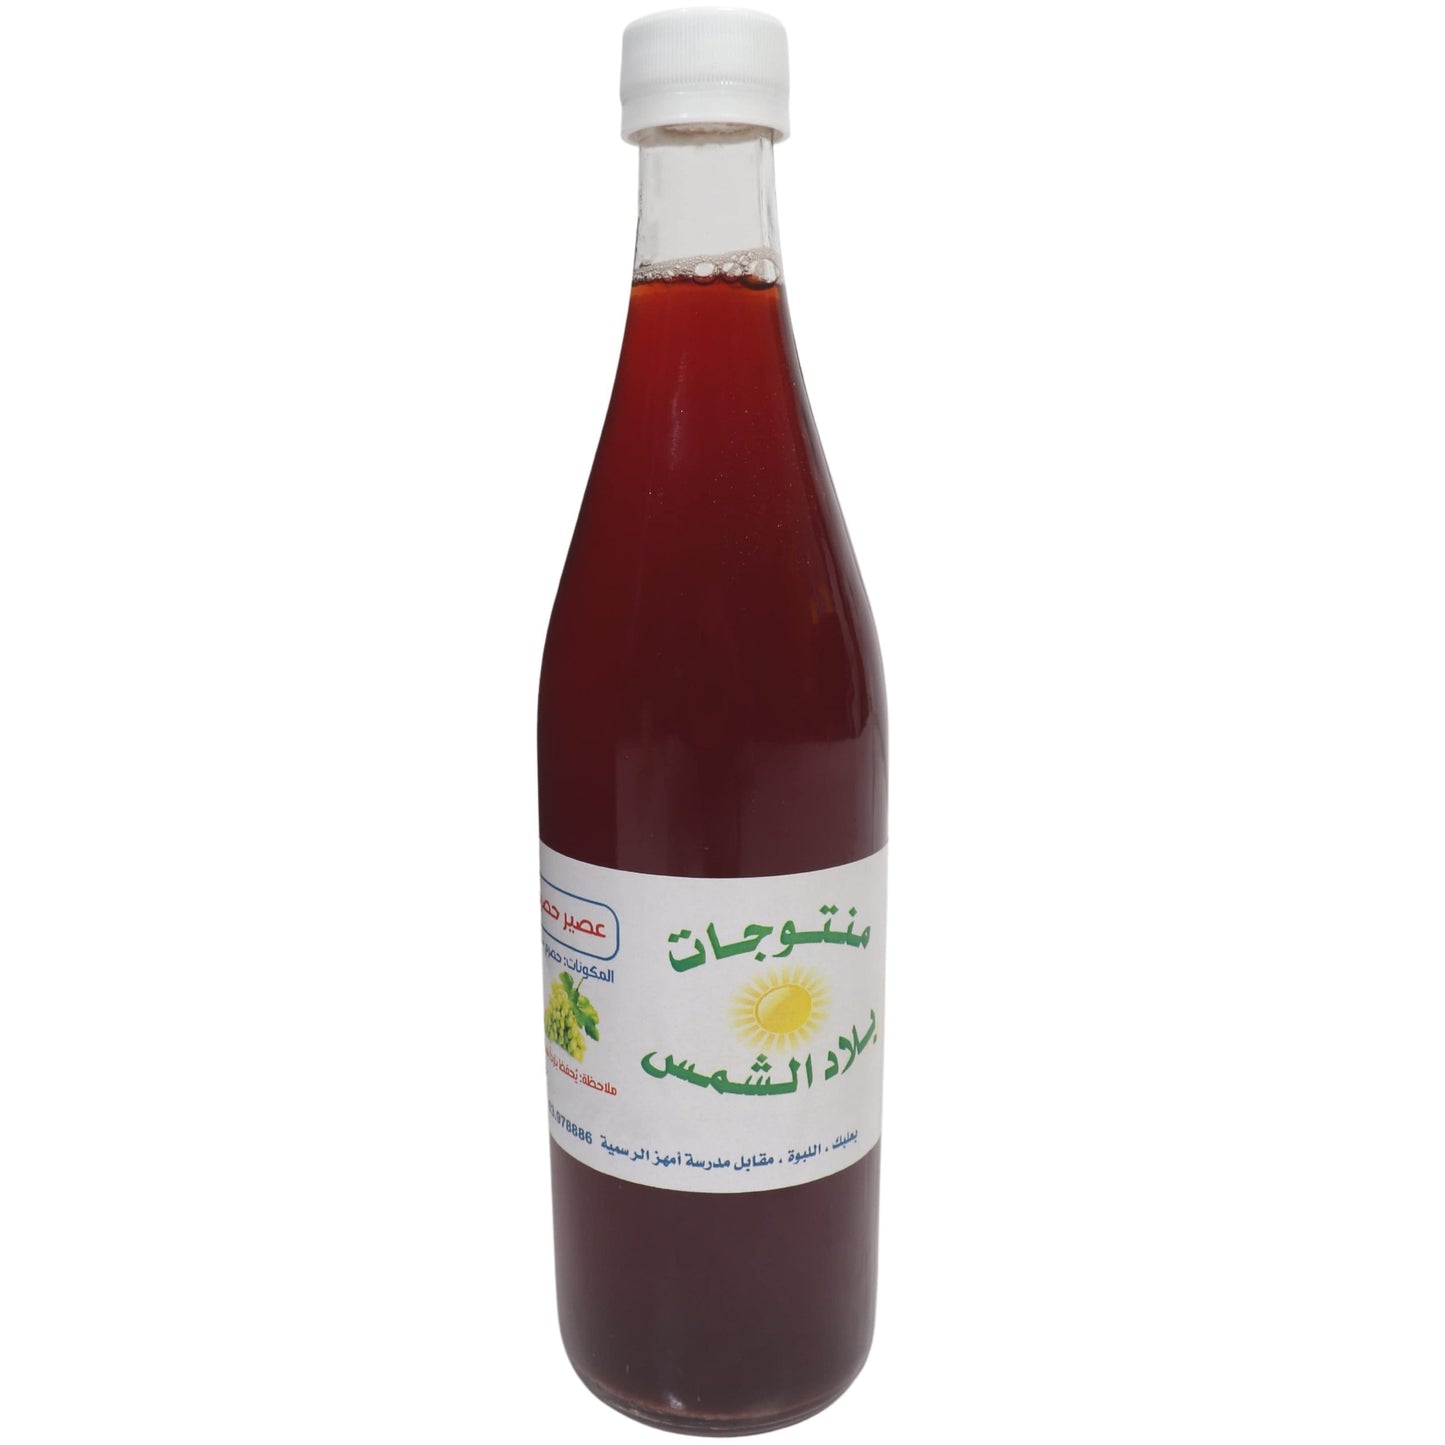 BILAD EL SHAMS Mounit El Day3a BILAD EL SHAMS - Sour Grape Juice